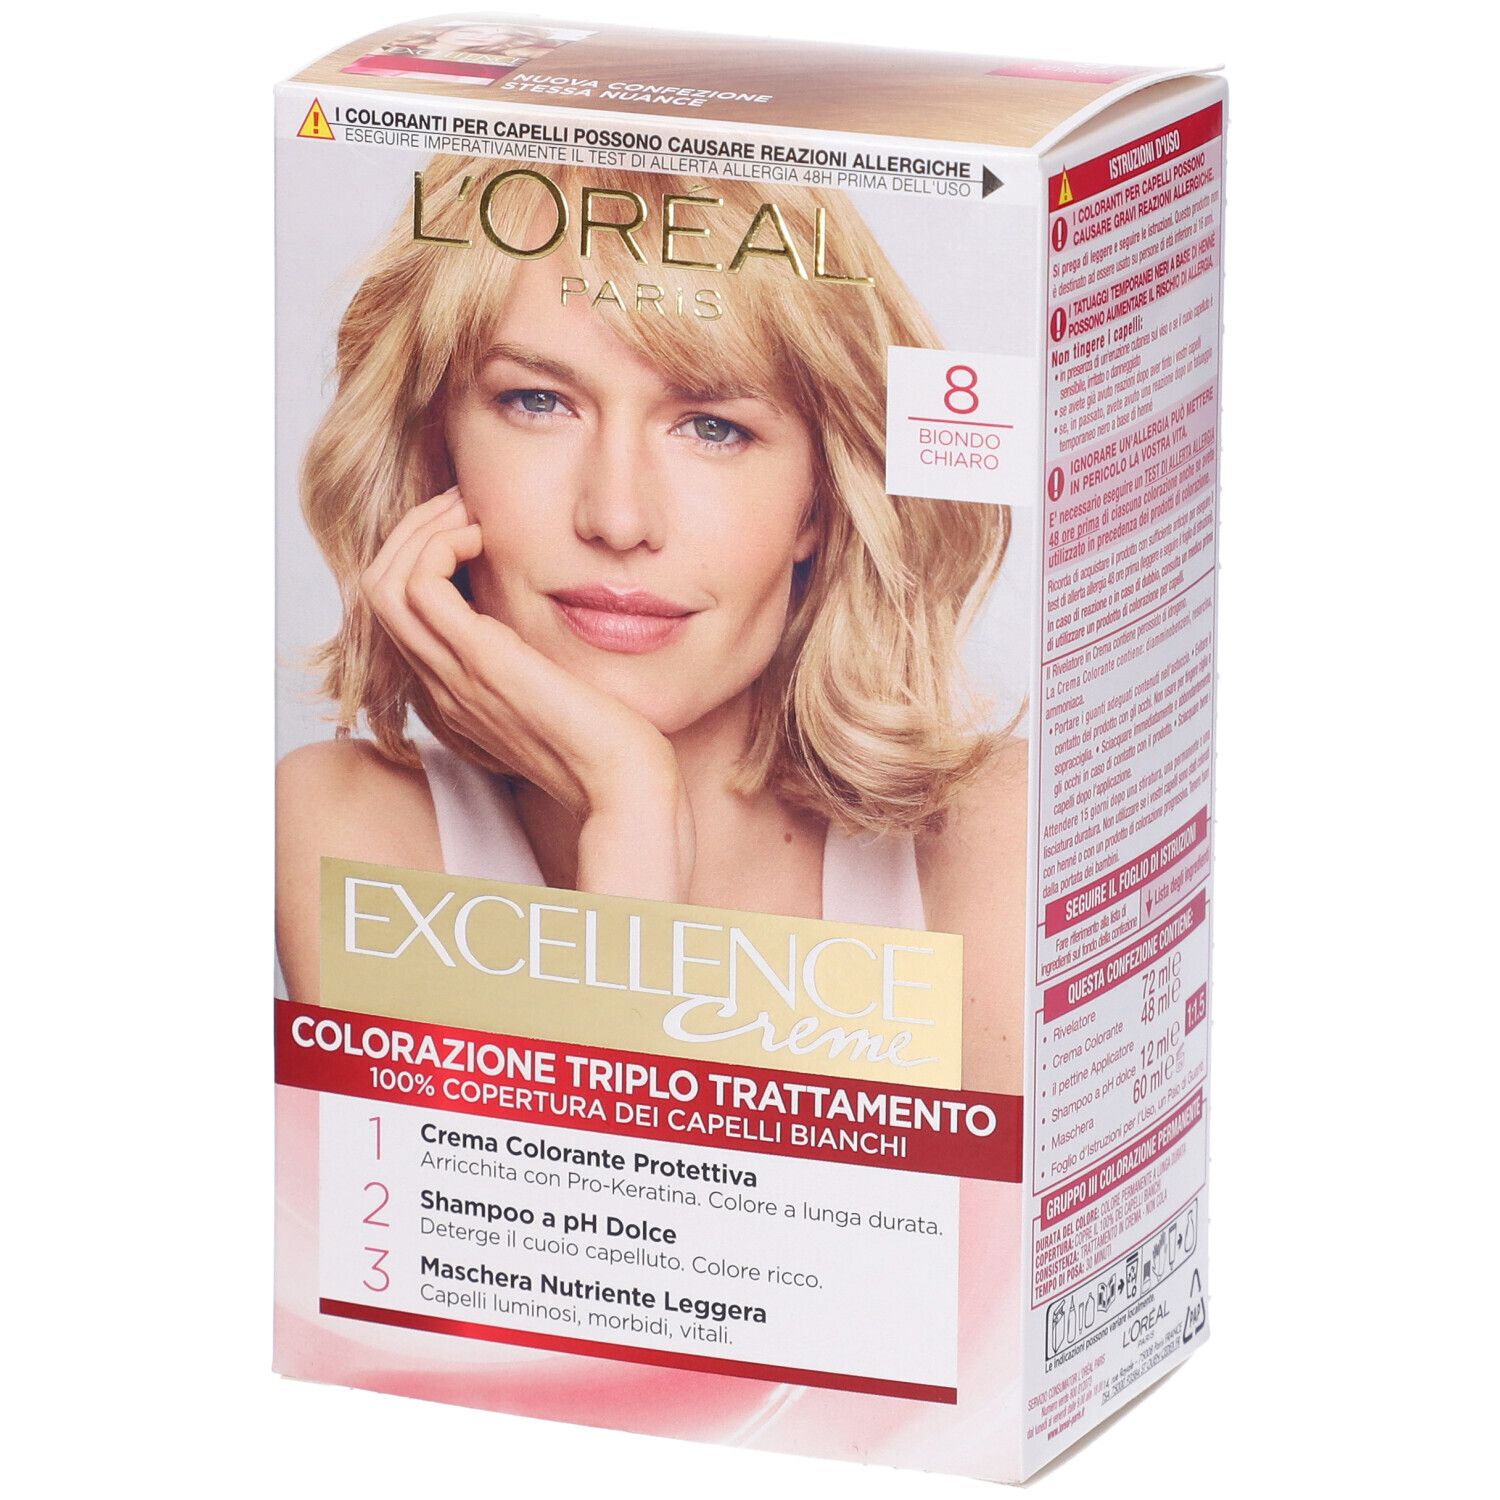 Image of L'Oréal Paris Tinta Capelli Excellence, Copre i capelli bianchi, colore ricco, luminoso e a lunga durata, 8 Biondo Chiaro